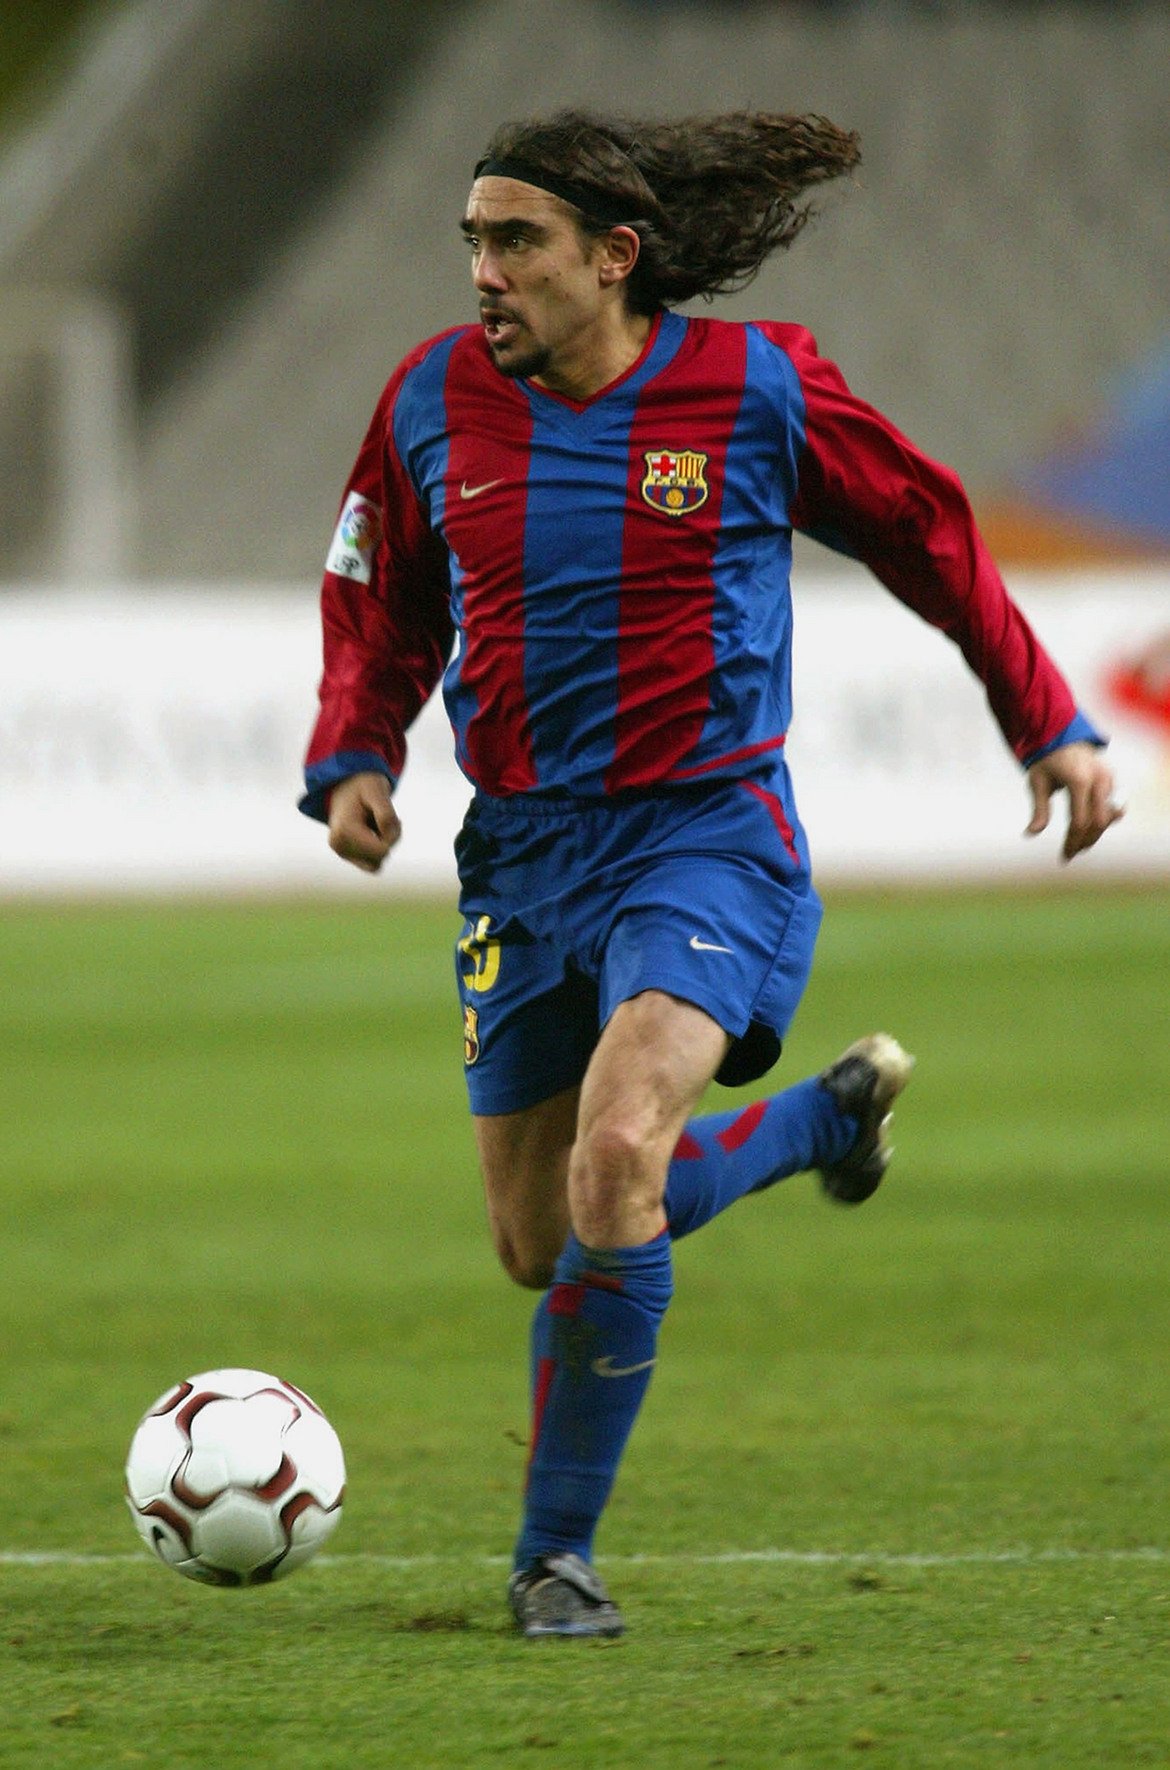 2. Хуан Пабло Сорин
Аржентинецът бе само на 19, когато пристигна на "Деле Алпи" през 1995-а. Но нямаше как да пробие в отбор с утвърдени имена и година по-късно му бе позволено да тръгне към Ривър Плейт. Направи добра кариера, преминала през Виляреал, Барселона и ПСЖ.